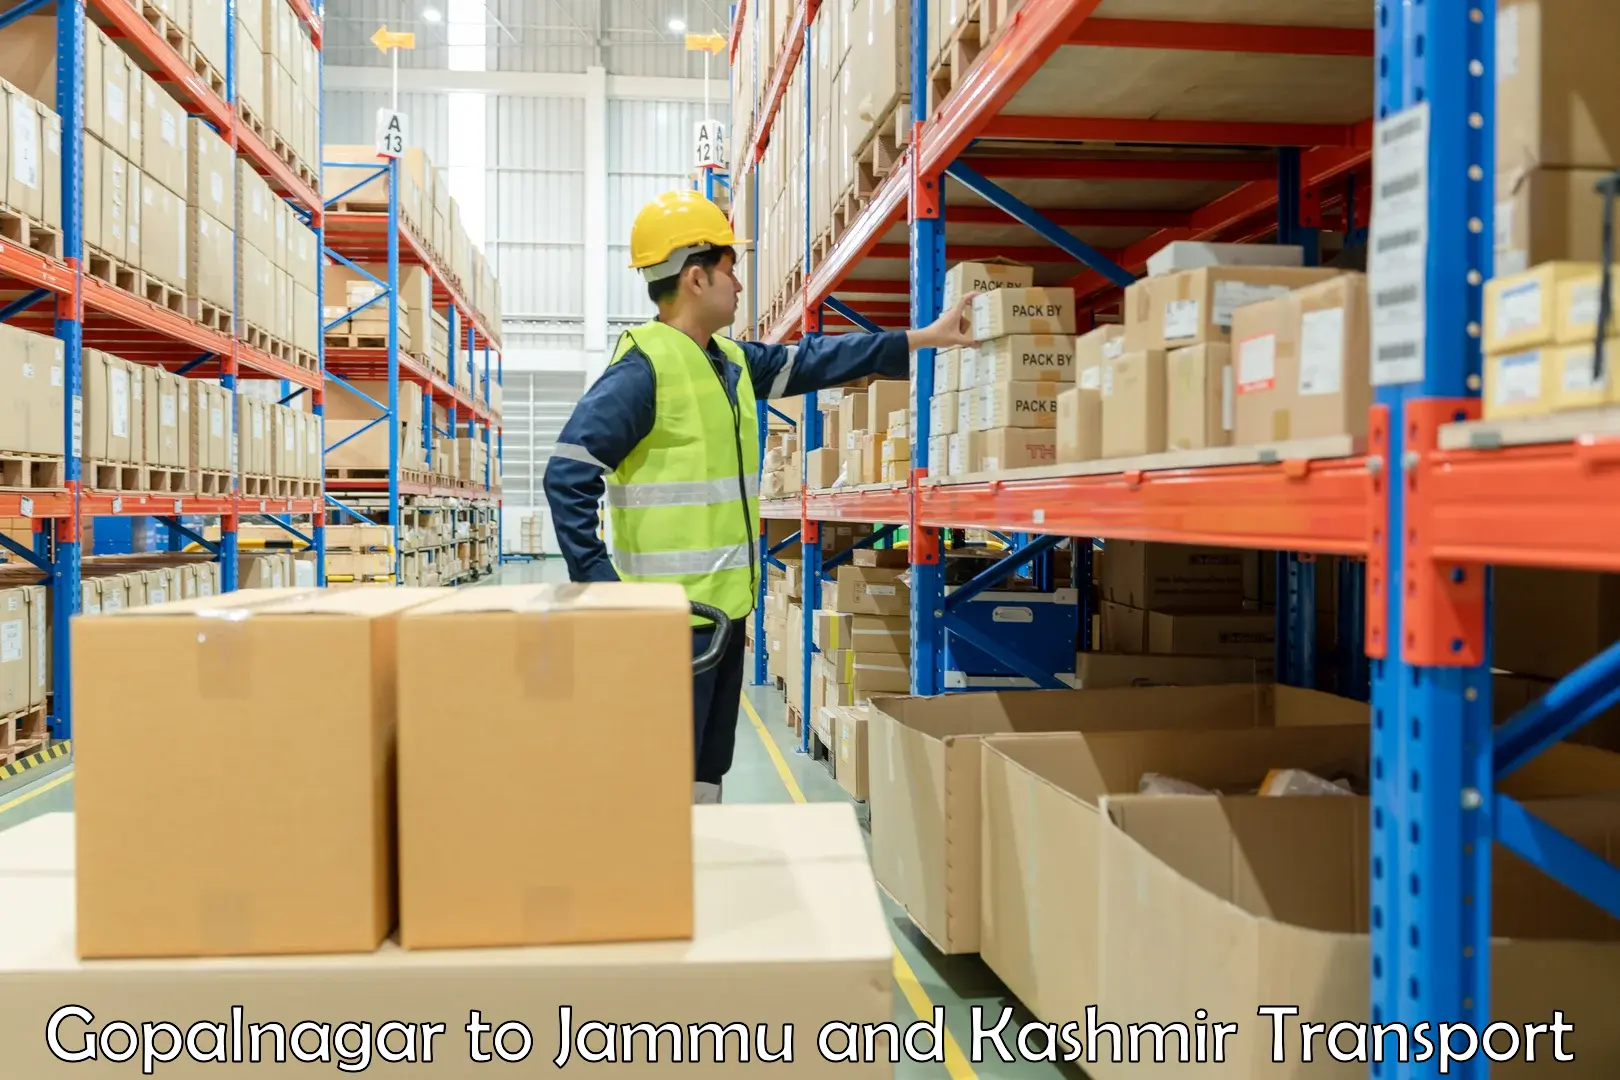 International cargo transportation services Gopalnagar to University of Kashmir Srinagar